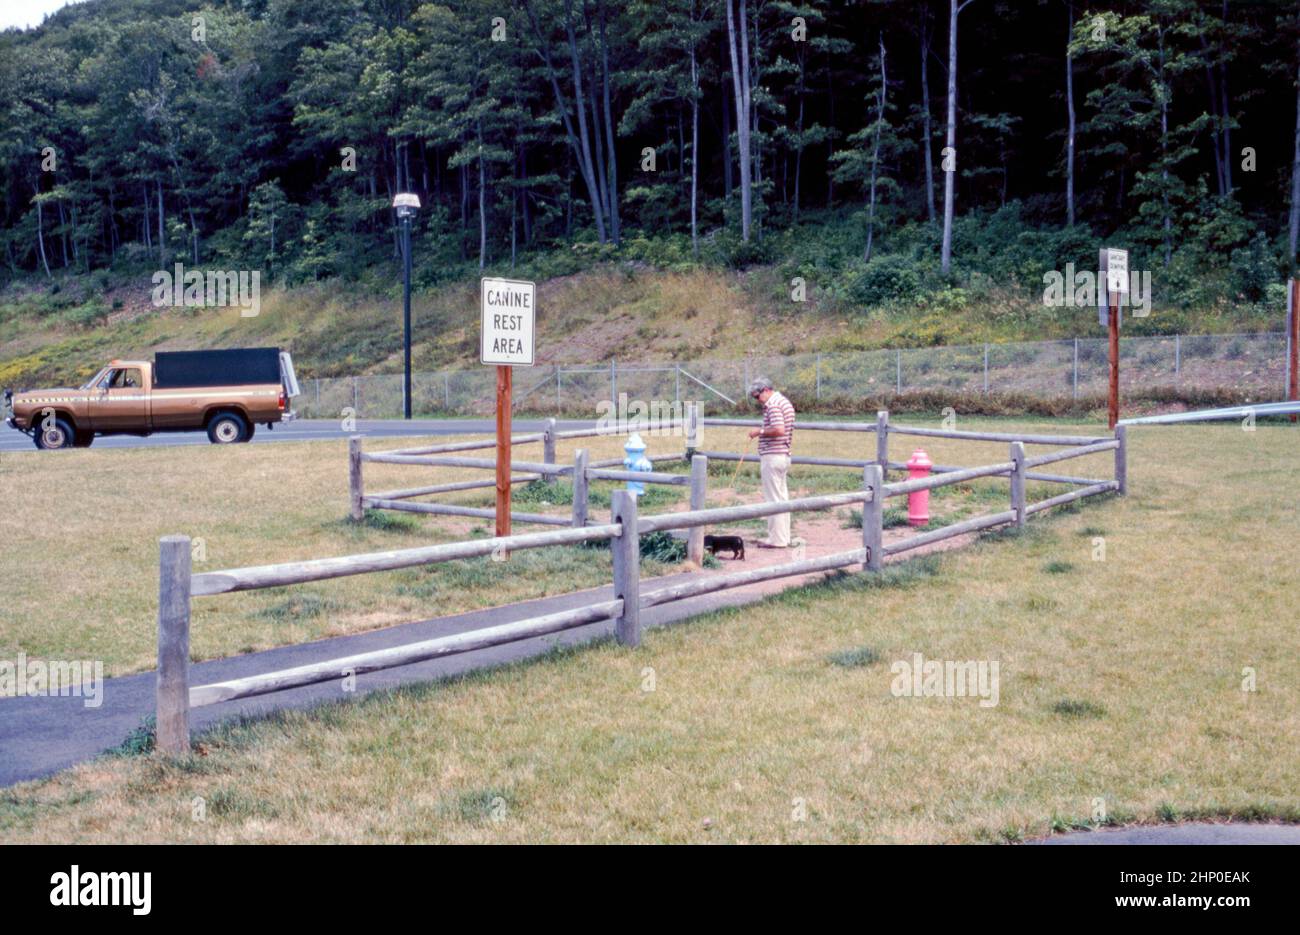 Ein ‘Canine Rest Area’ am Straßenrand in Connecticut, USA im Jahr 1980 – ein Mann hat seinen Hund an der Leine im eingezäunten Bereich. Die Fläche ist viel zu klein, um für die Ausübung von Tieren genutzt werden zu können. Die bunten alten Hydranten sind ein Hinweis auf ihren Zweck – eine doggy Toilette! Dieses Bild stammt aus einer alten amerikanischen Amateur-Farbtransparenz – einem Vintage-Foto aus dem Jahr 1980s. Stockfoto